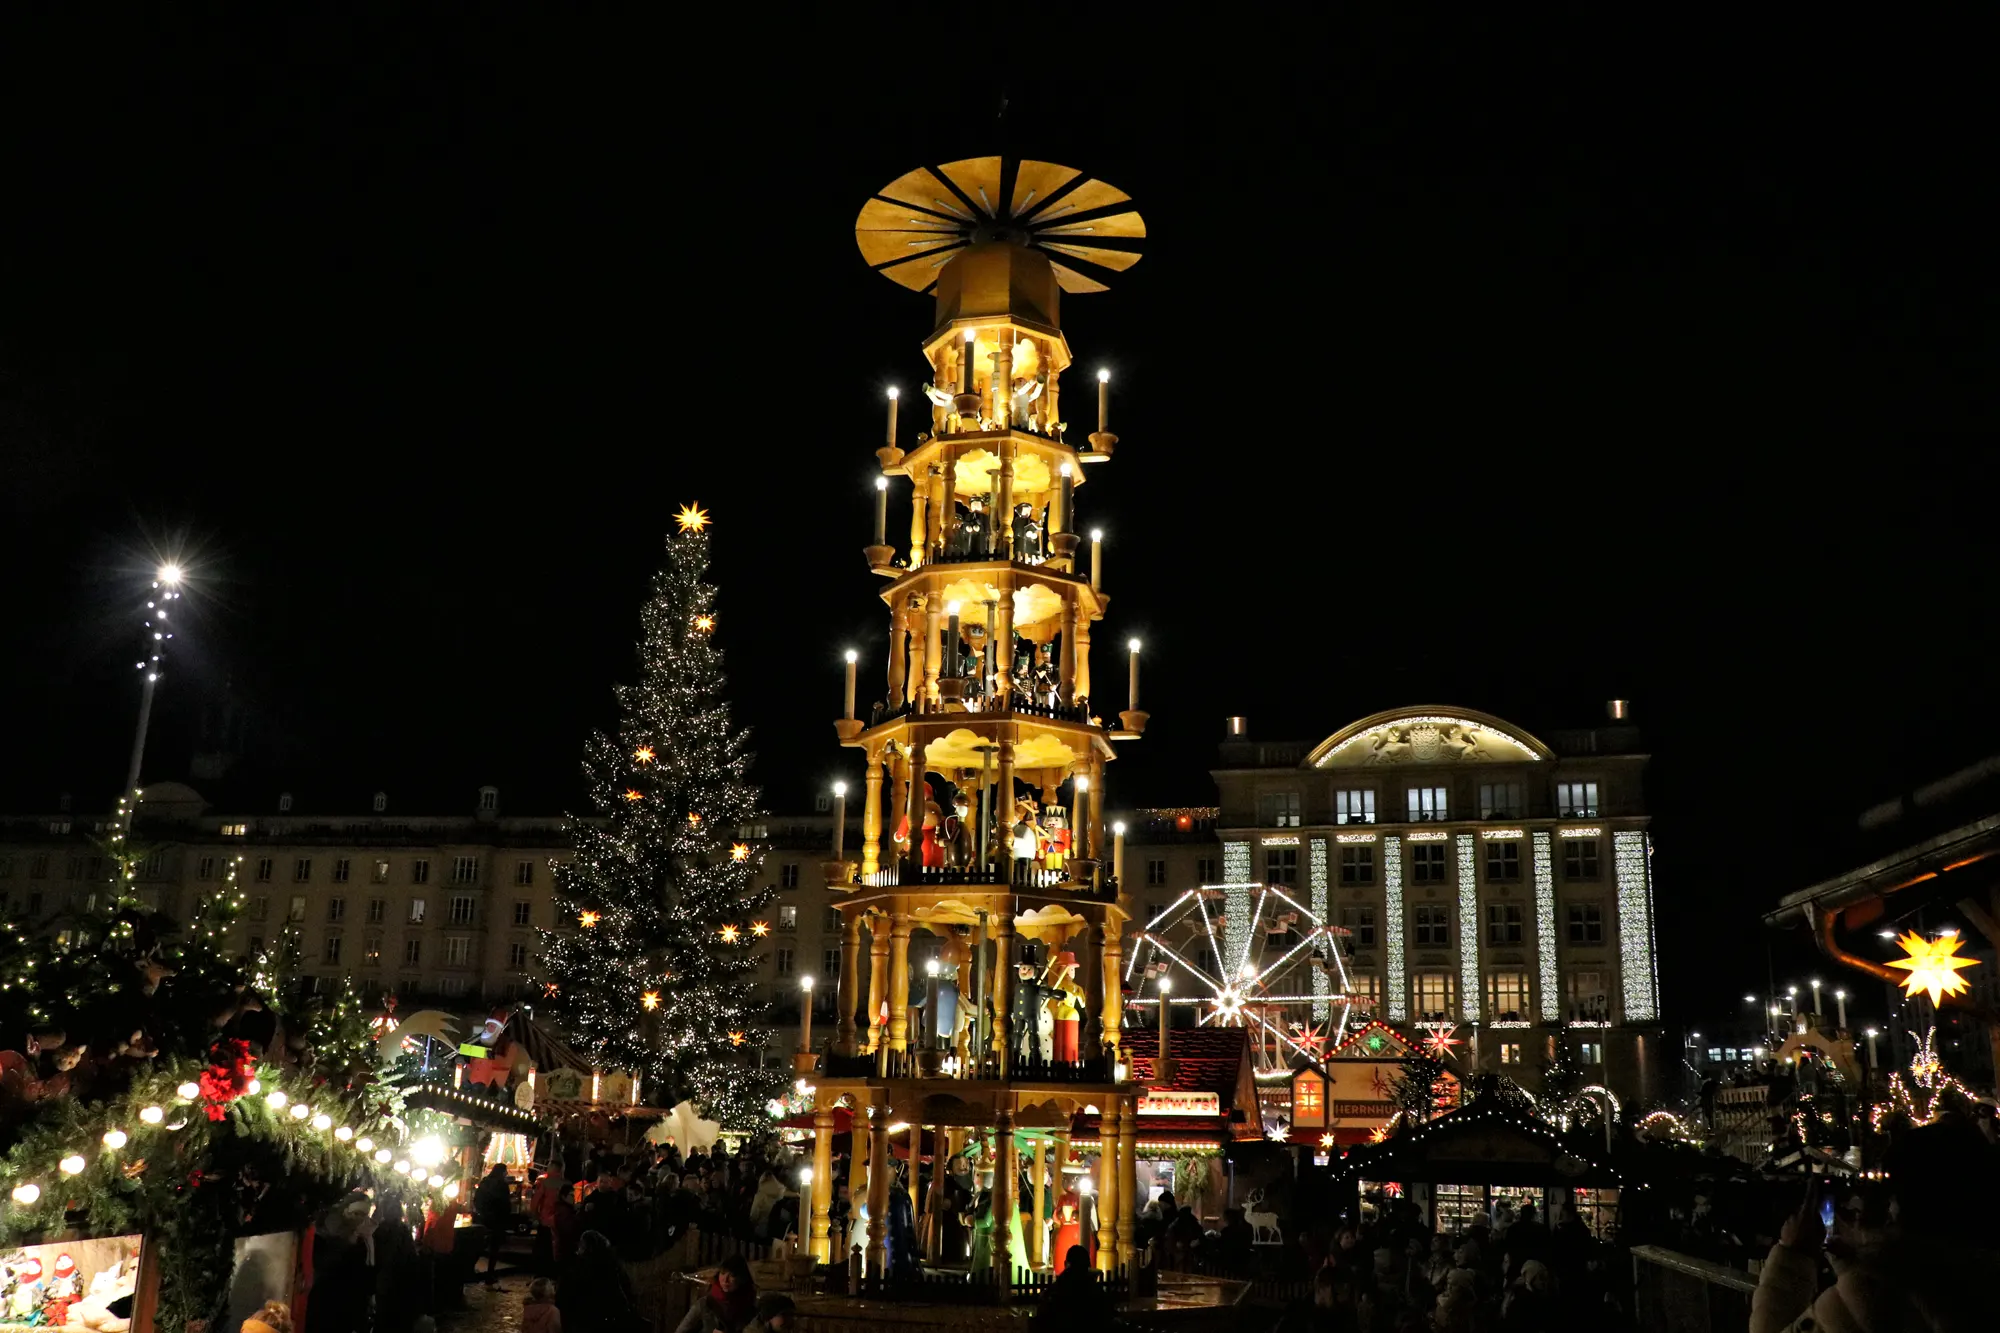 Kerstmarkt Dresden - Dresdner Striezelmarkt